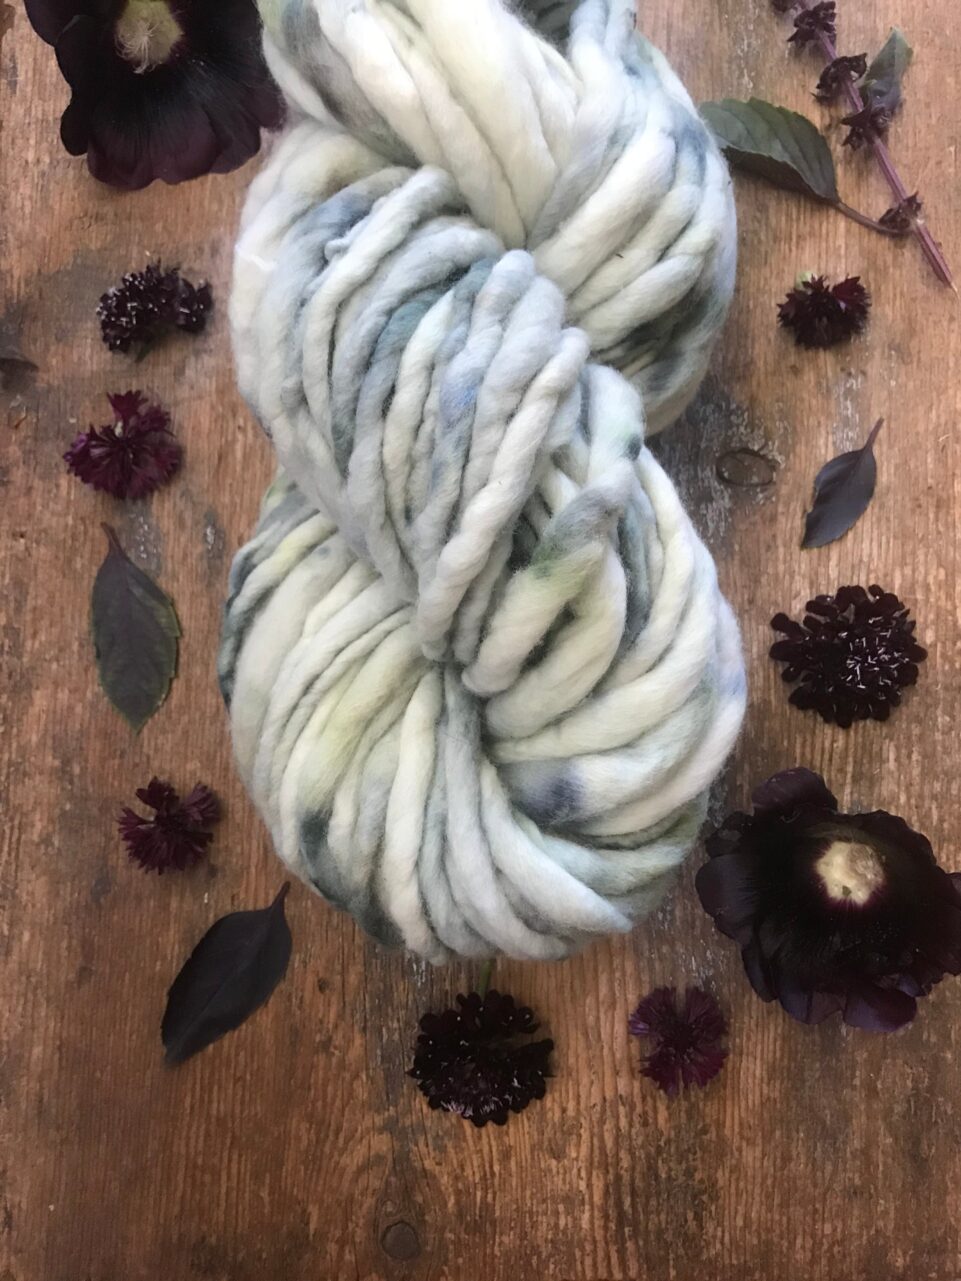 Handspun yarn hand dyed merino wool, Luxurious Hand Dyed Merino